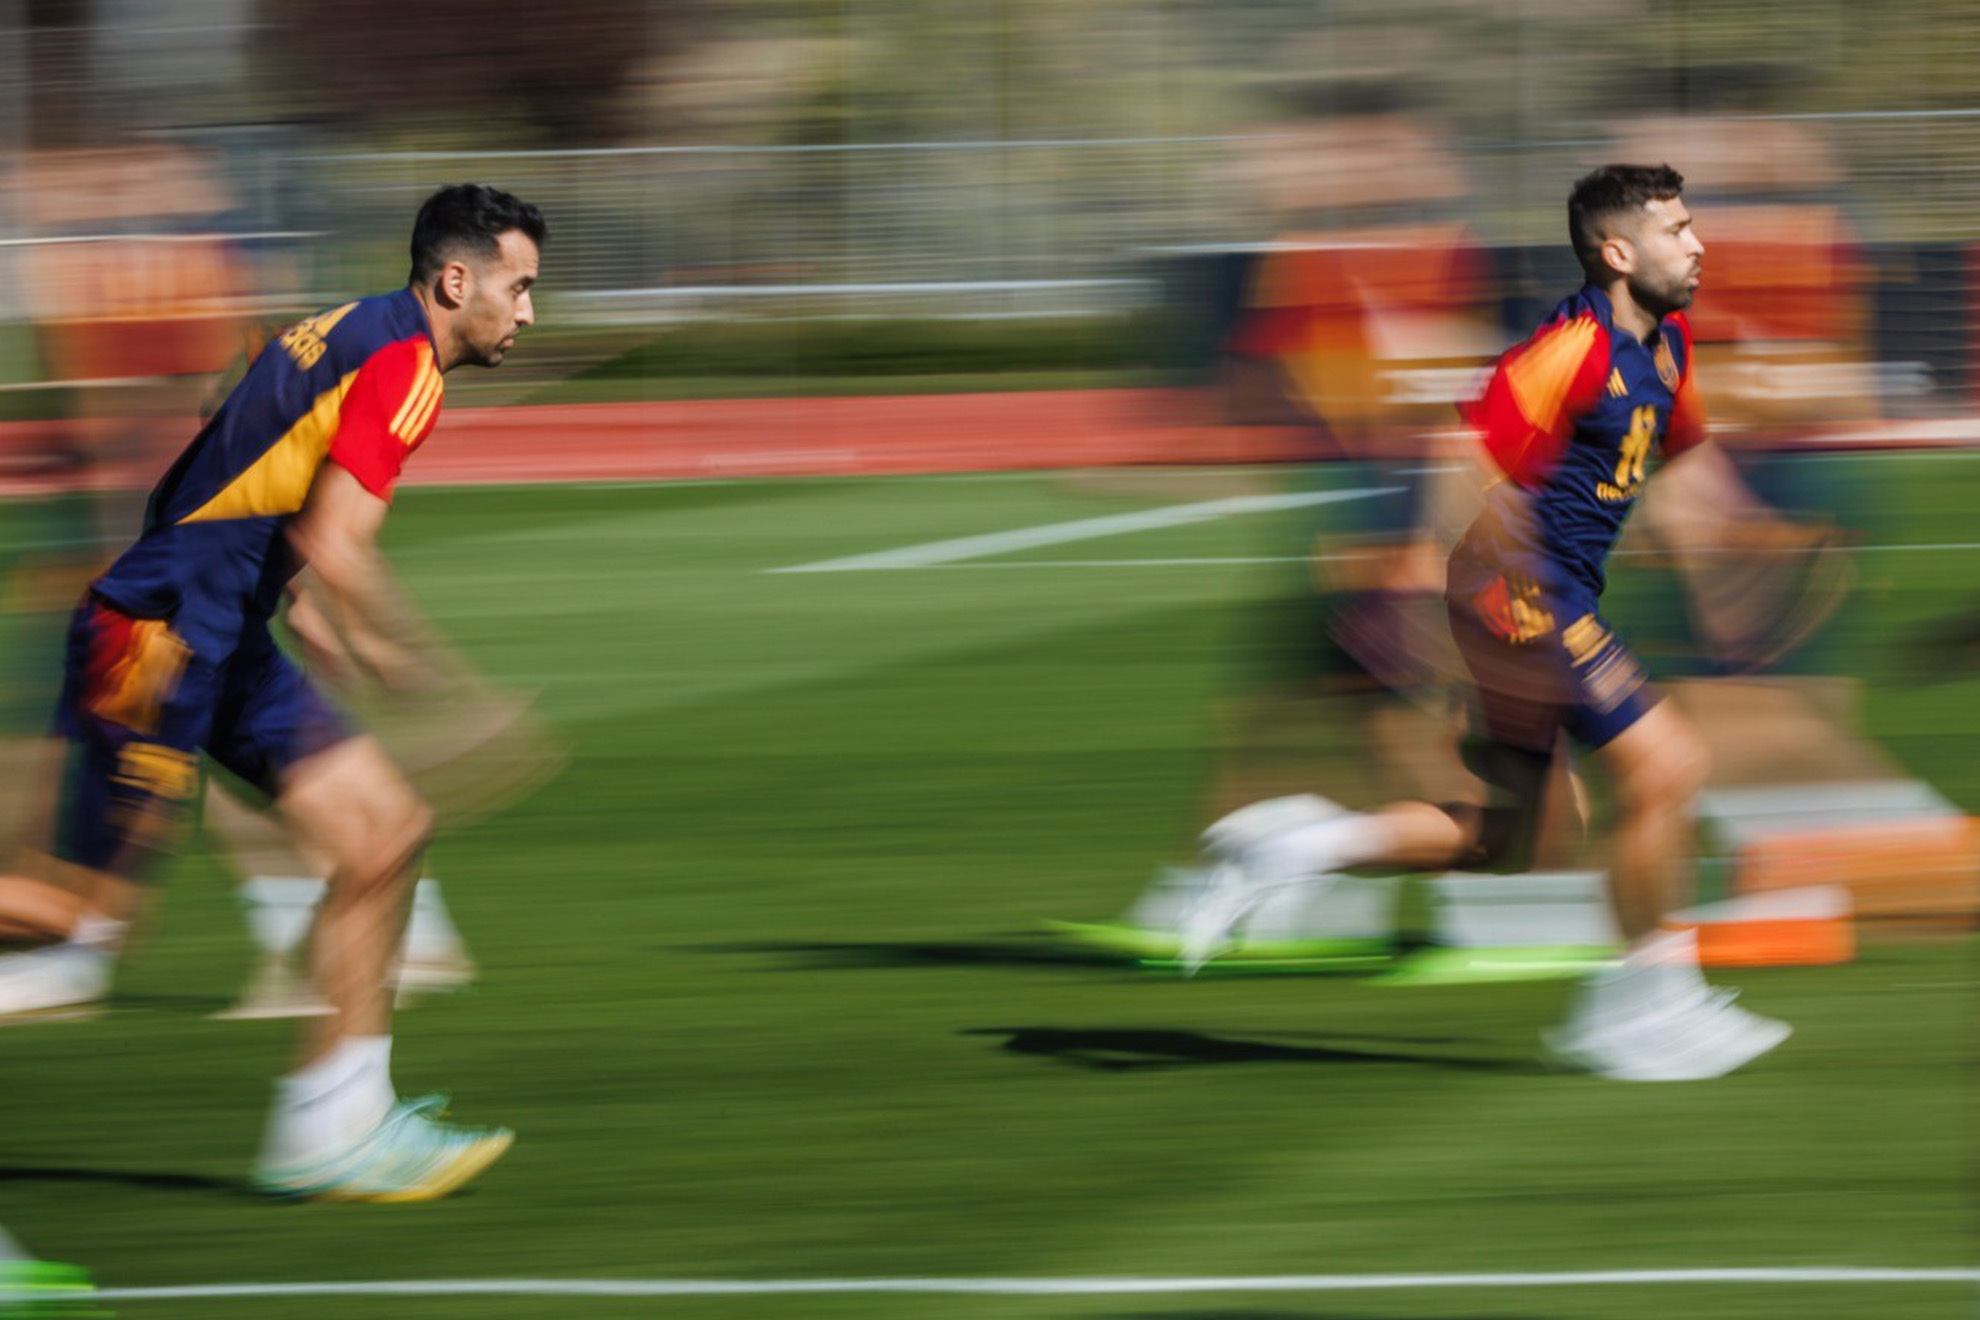 La selección española presume su entrenamiento con la última tecnología. | @SEFutbol